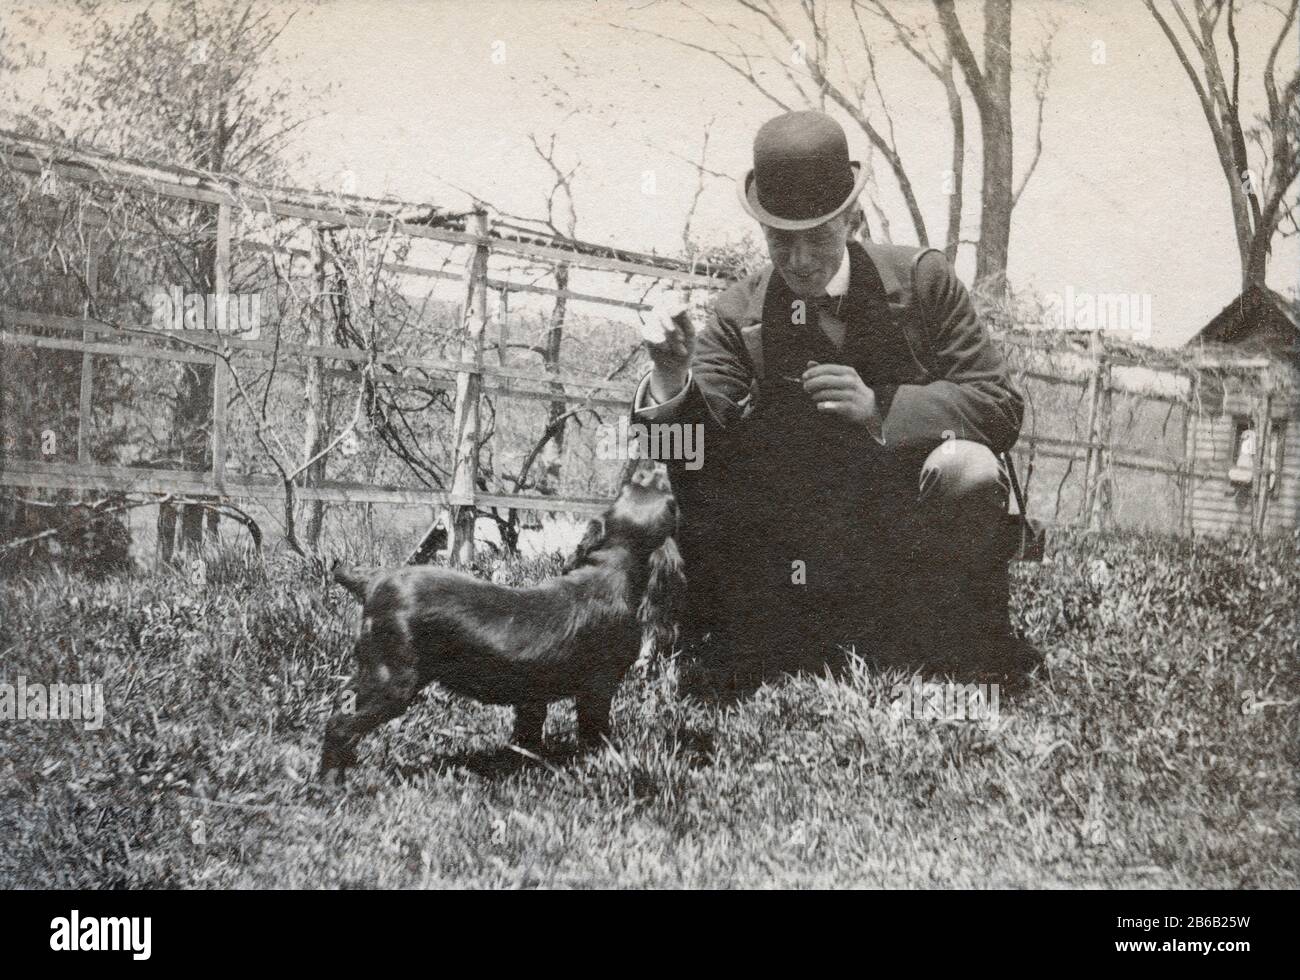 Antiquariato luglio 1898 fotografia, uomo vittoriano con cani spagnoli in cortile. Posizione esatta sconosciuta, probabilmente New York. FONTE: FOTOGRAFIA ORIGINALE Foto Stock